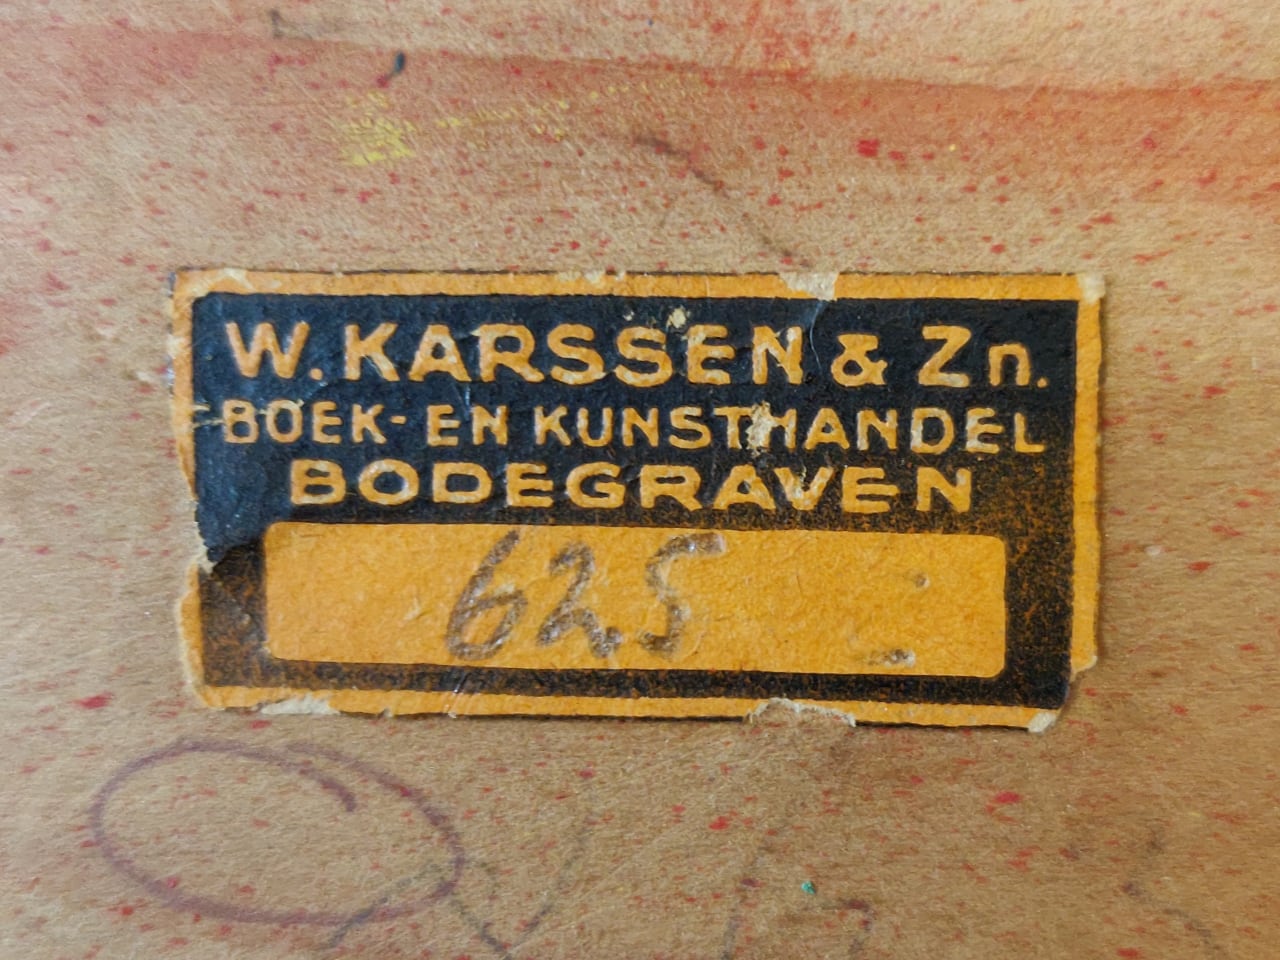 Sticker van de boek- en kunsthandel W. Karssen & Zn. uit Bodegraven (jaren 1930)